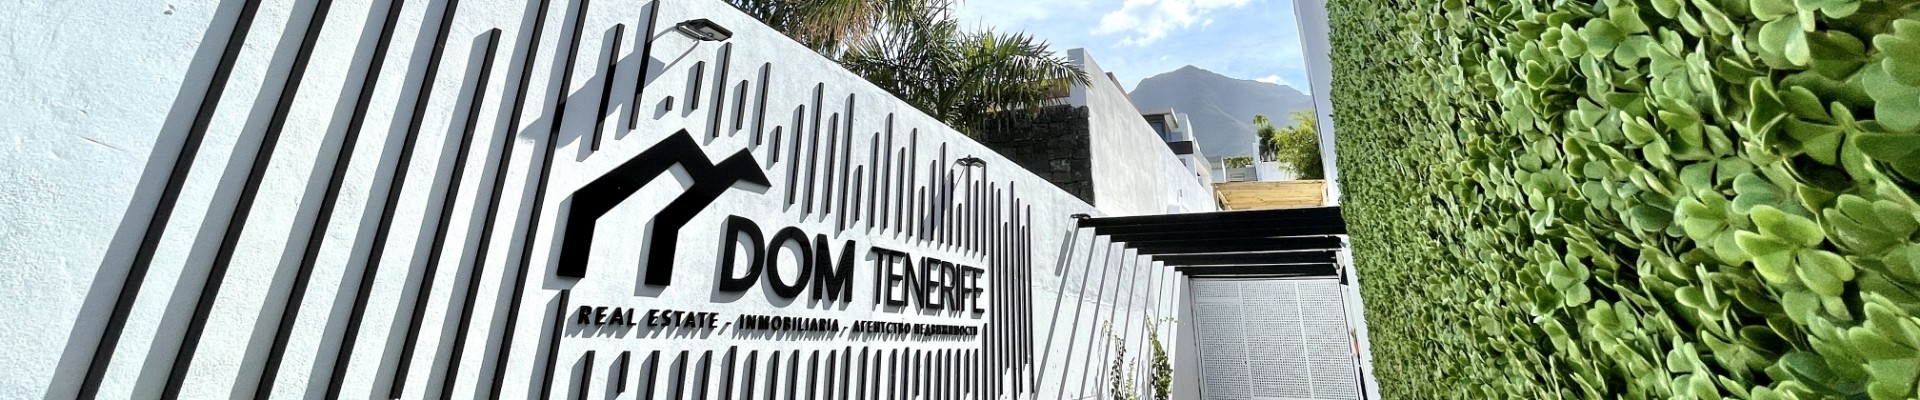 Venda su propiedad con DOM Tenerife Real Estate